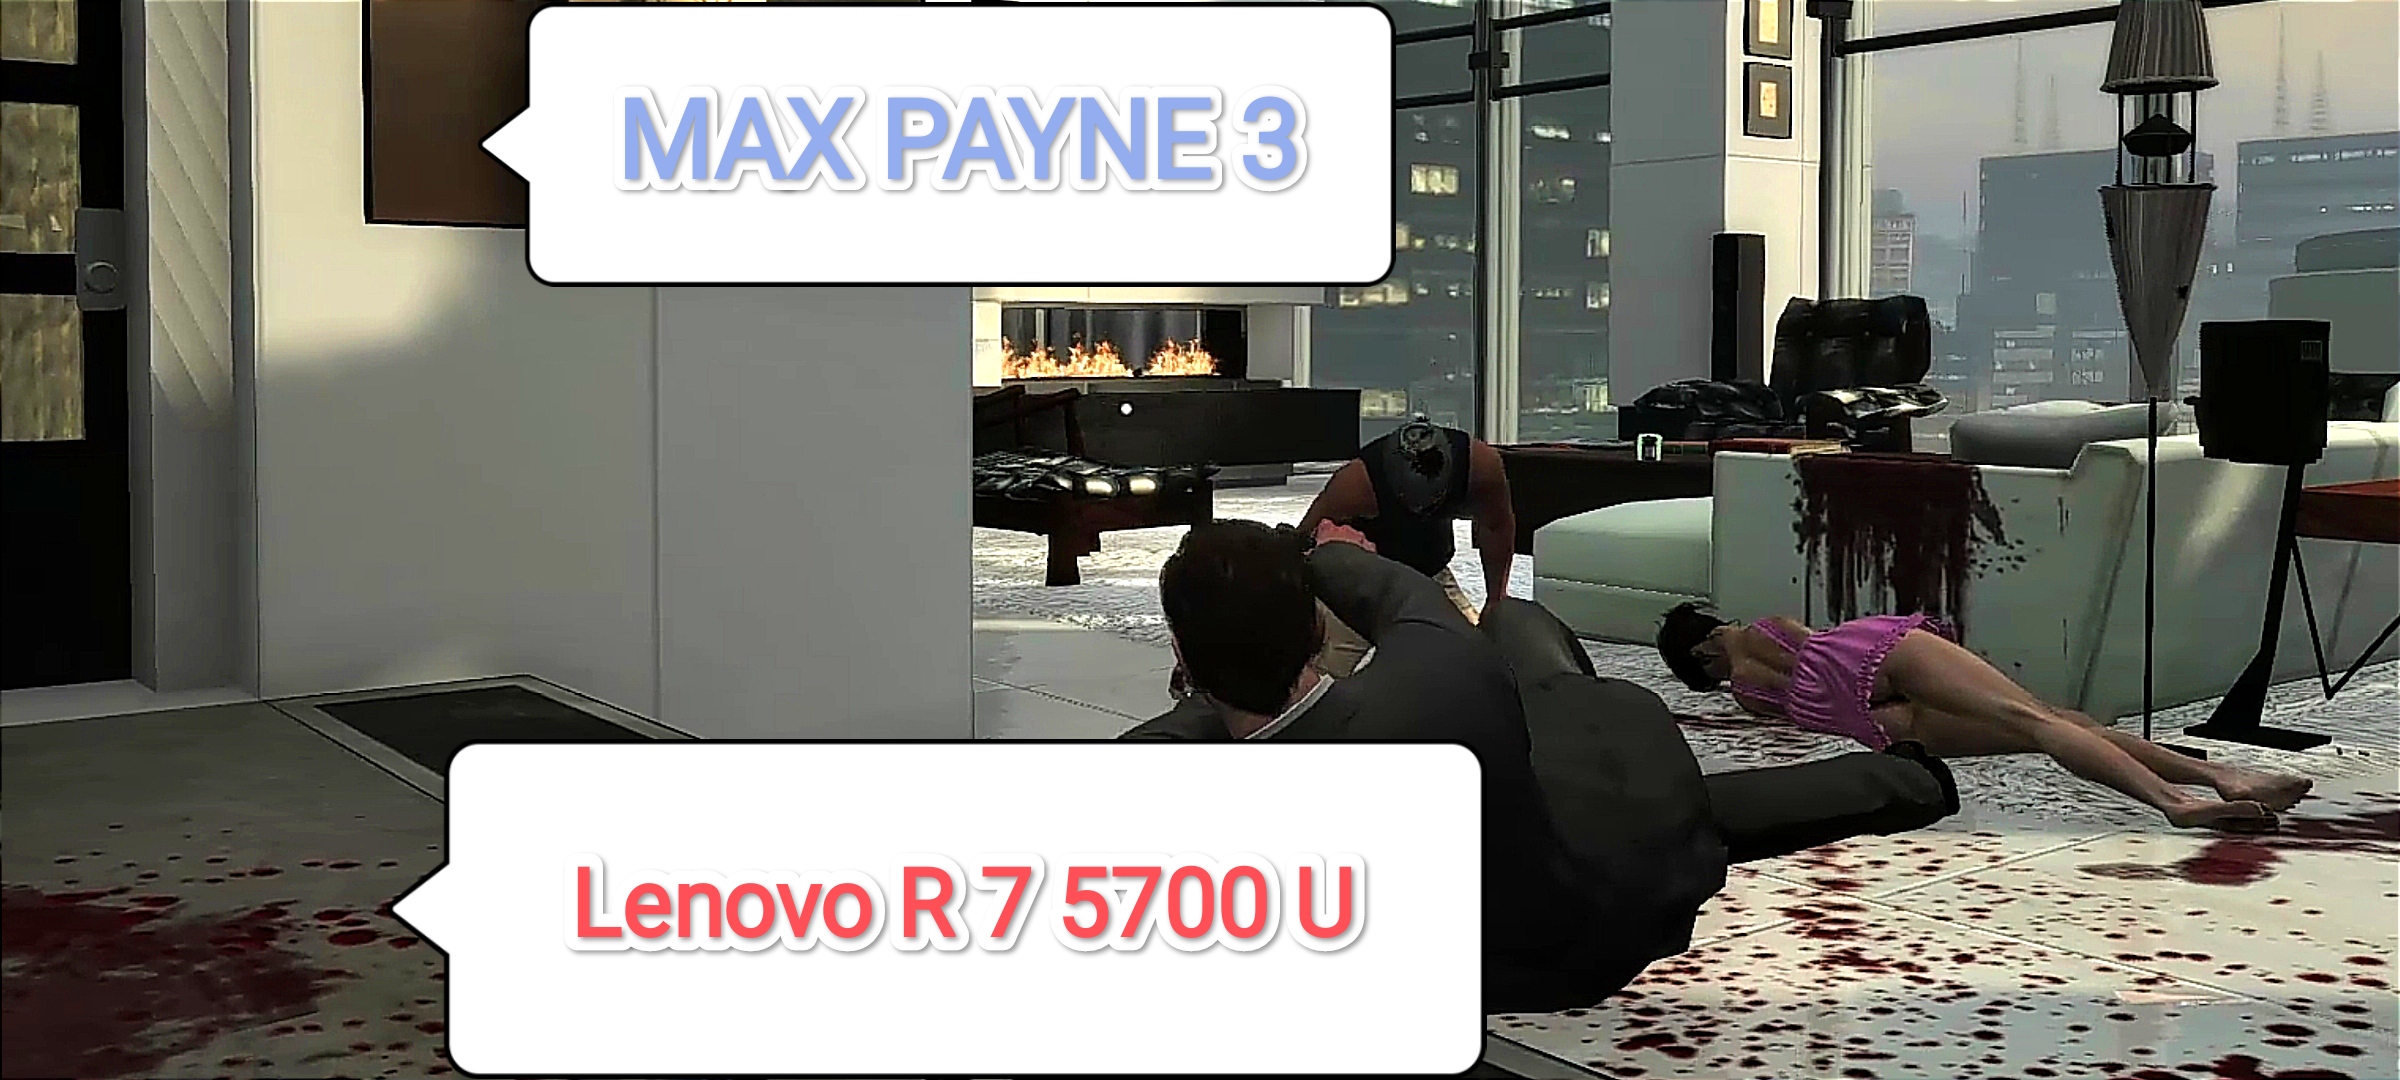 Max Payne 3 - настройки для 60 фпс на Lenovo R 7 5700 U